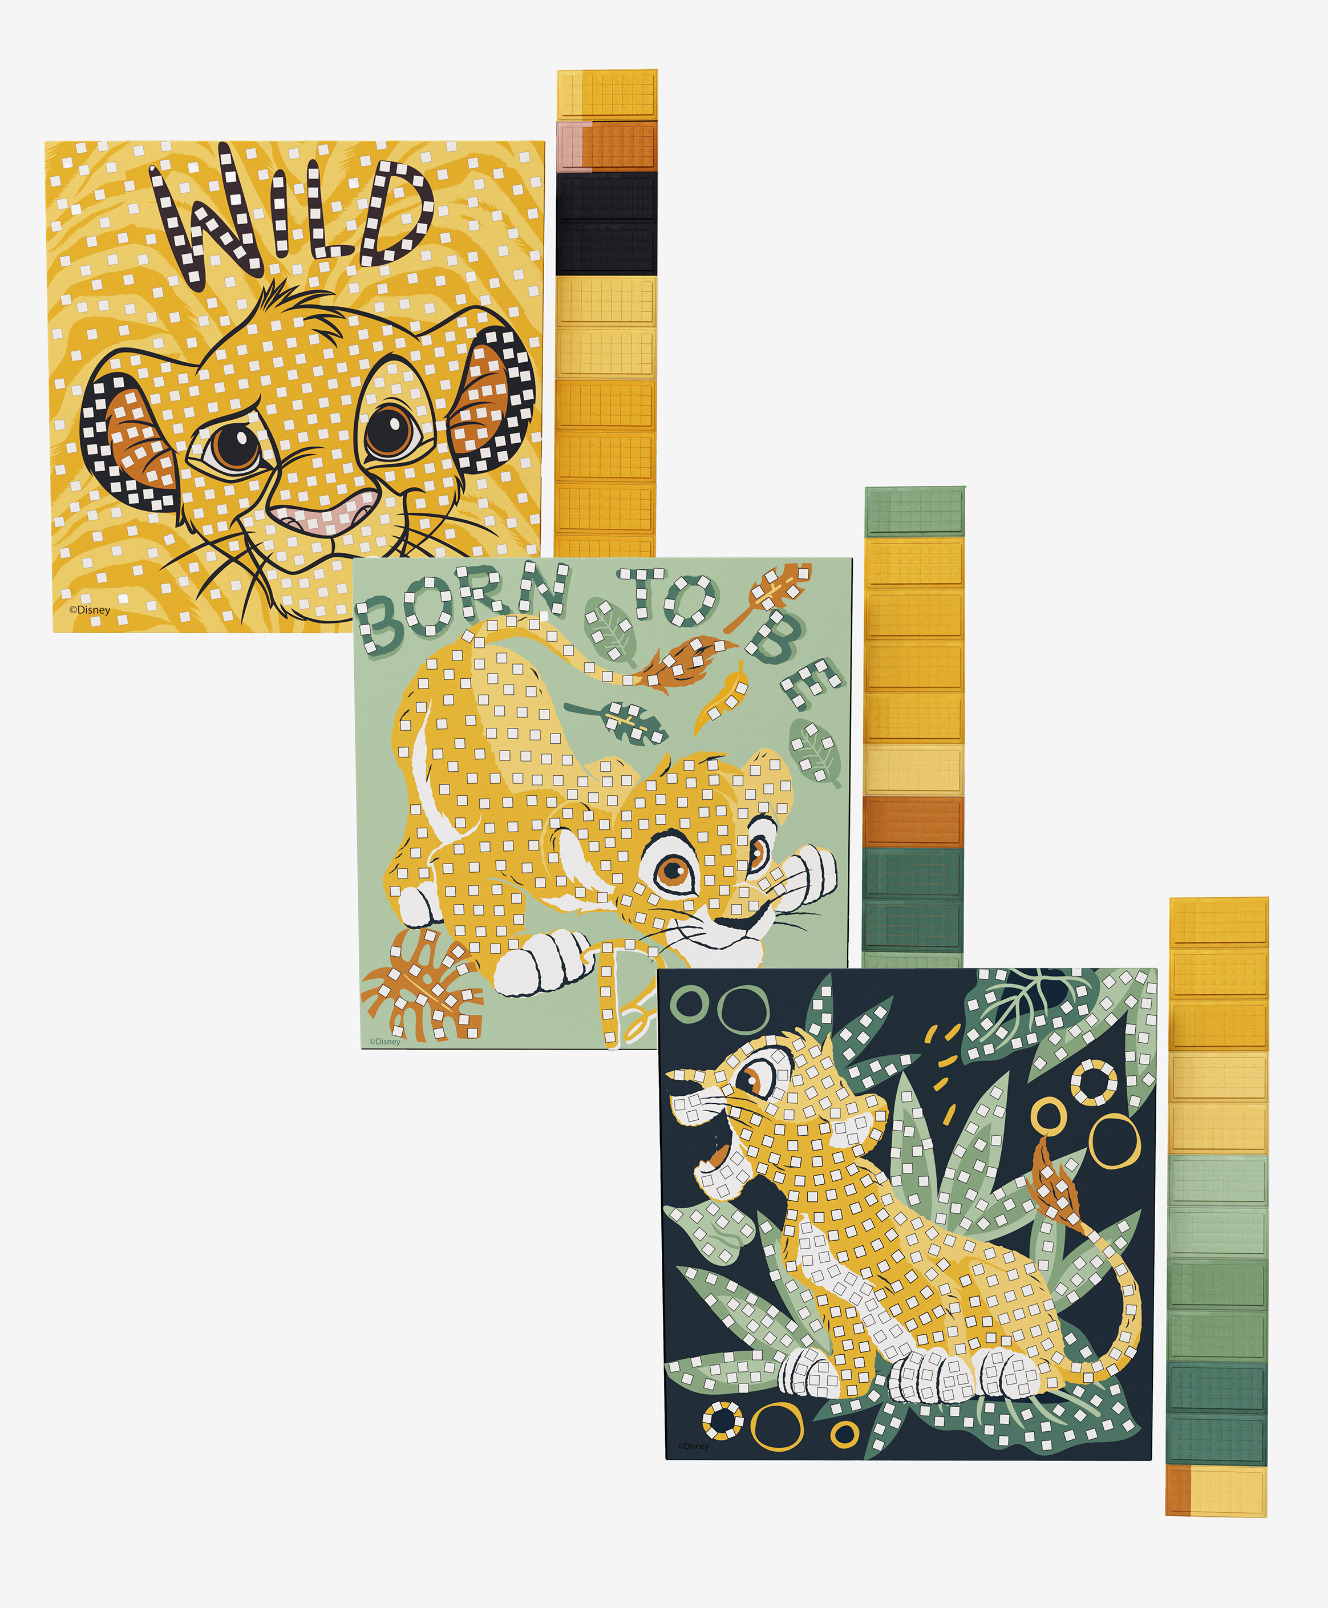 mosaico creativo de il re leone